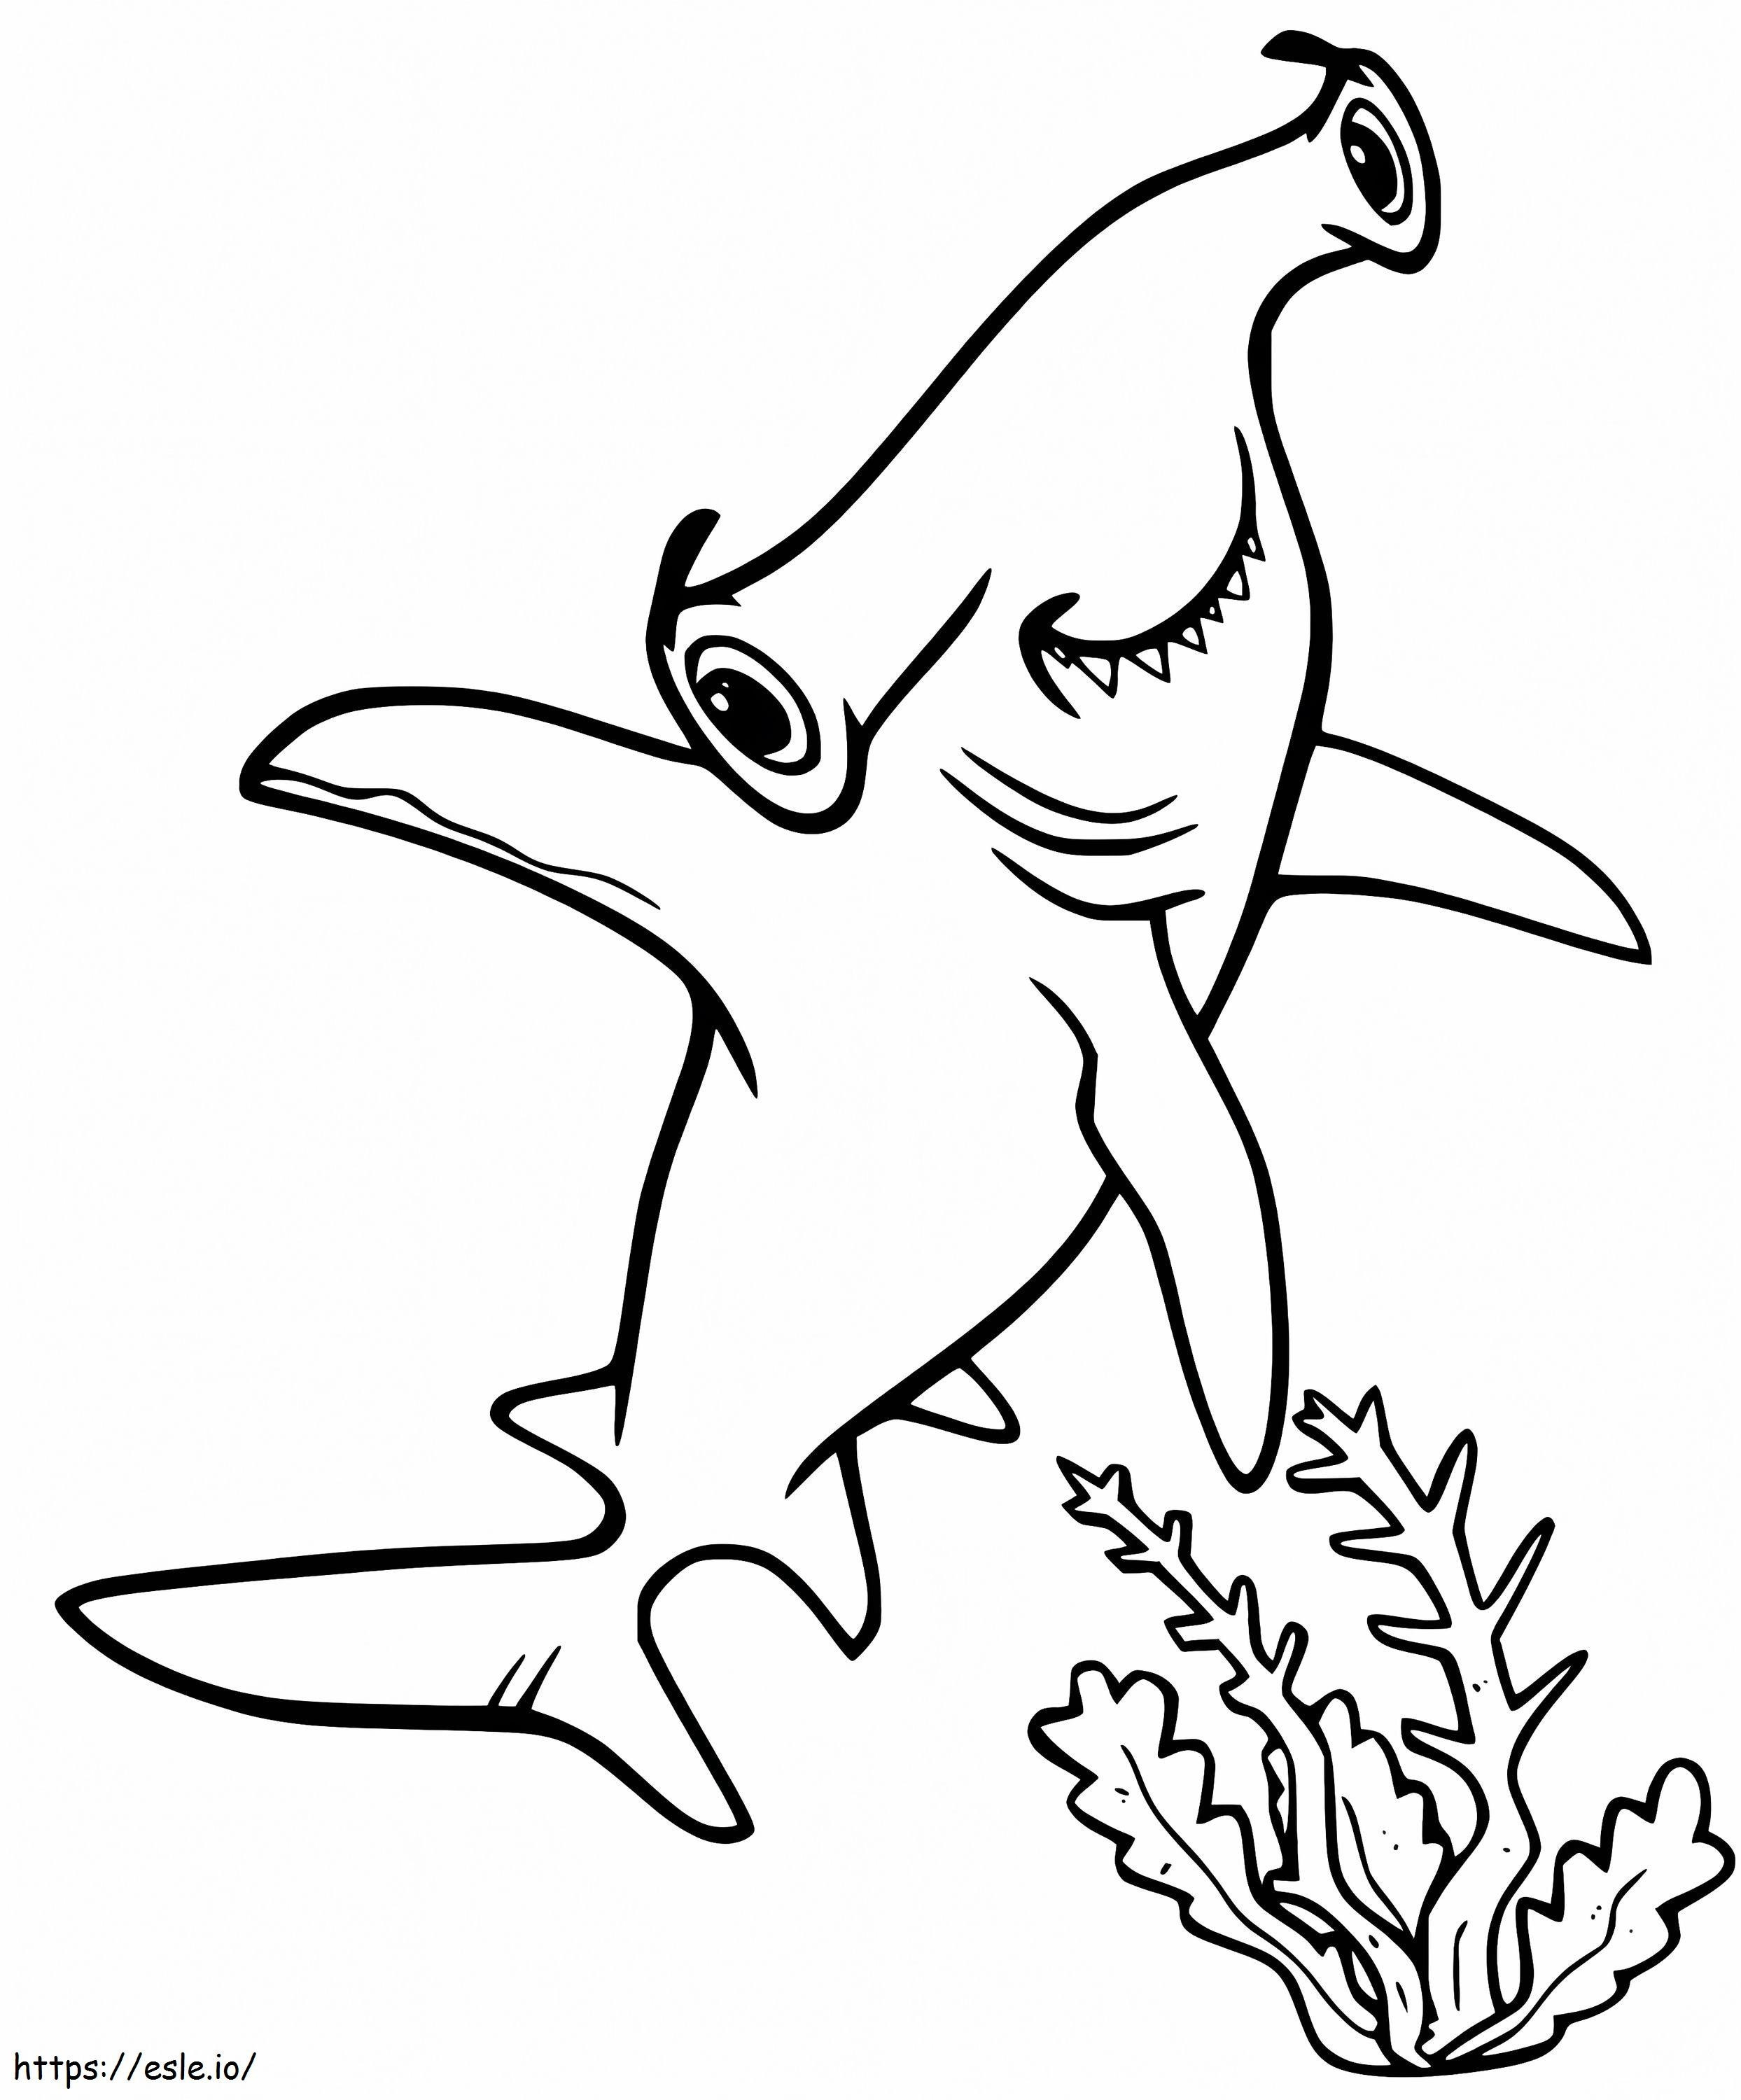 Felice squalo martello da colorare